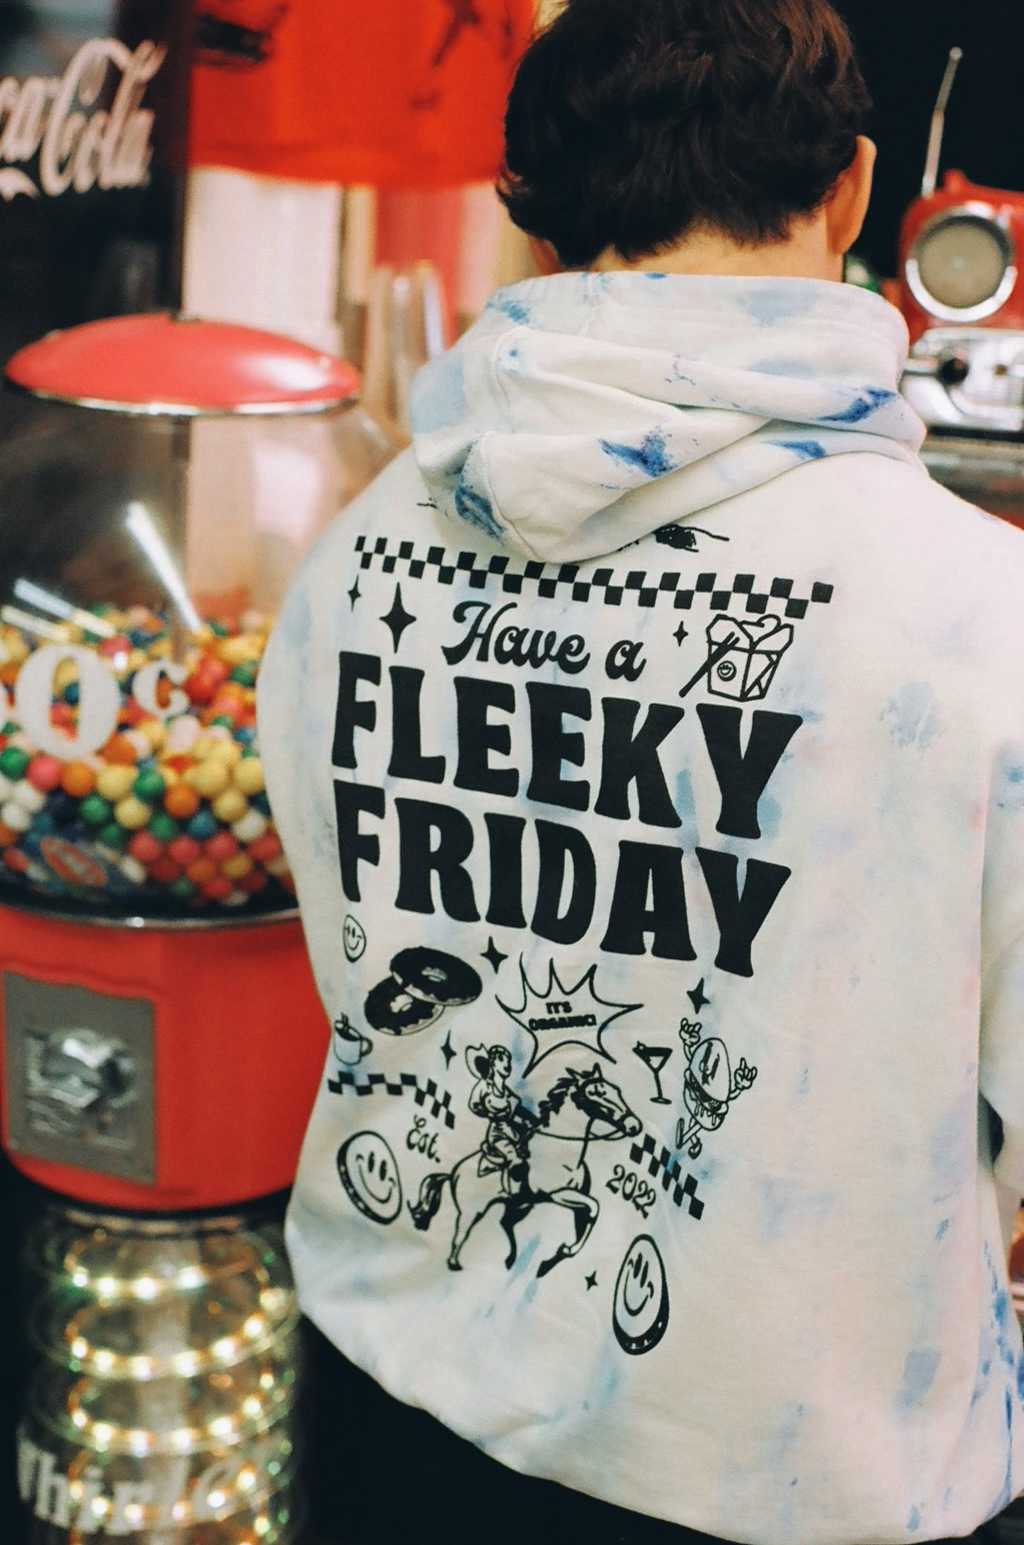 Fleeky Friday